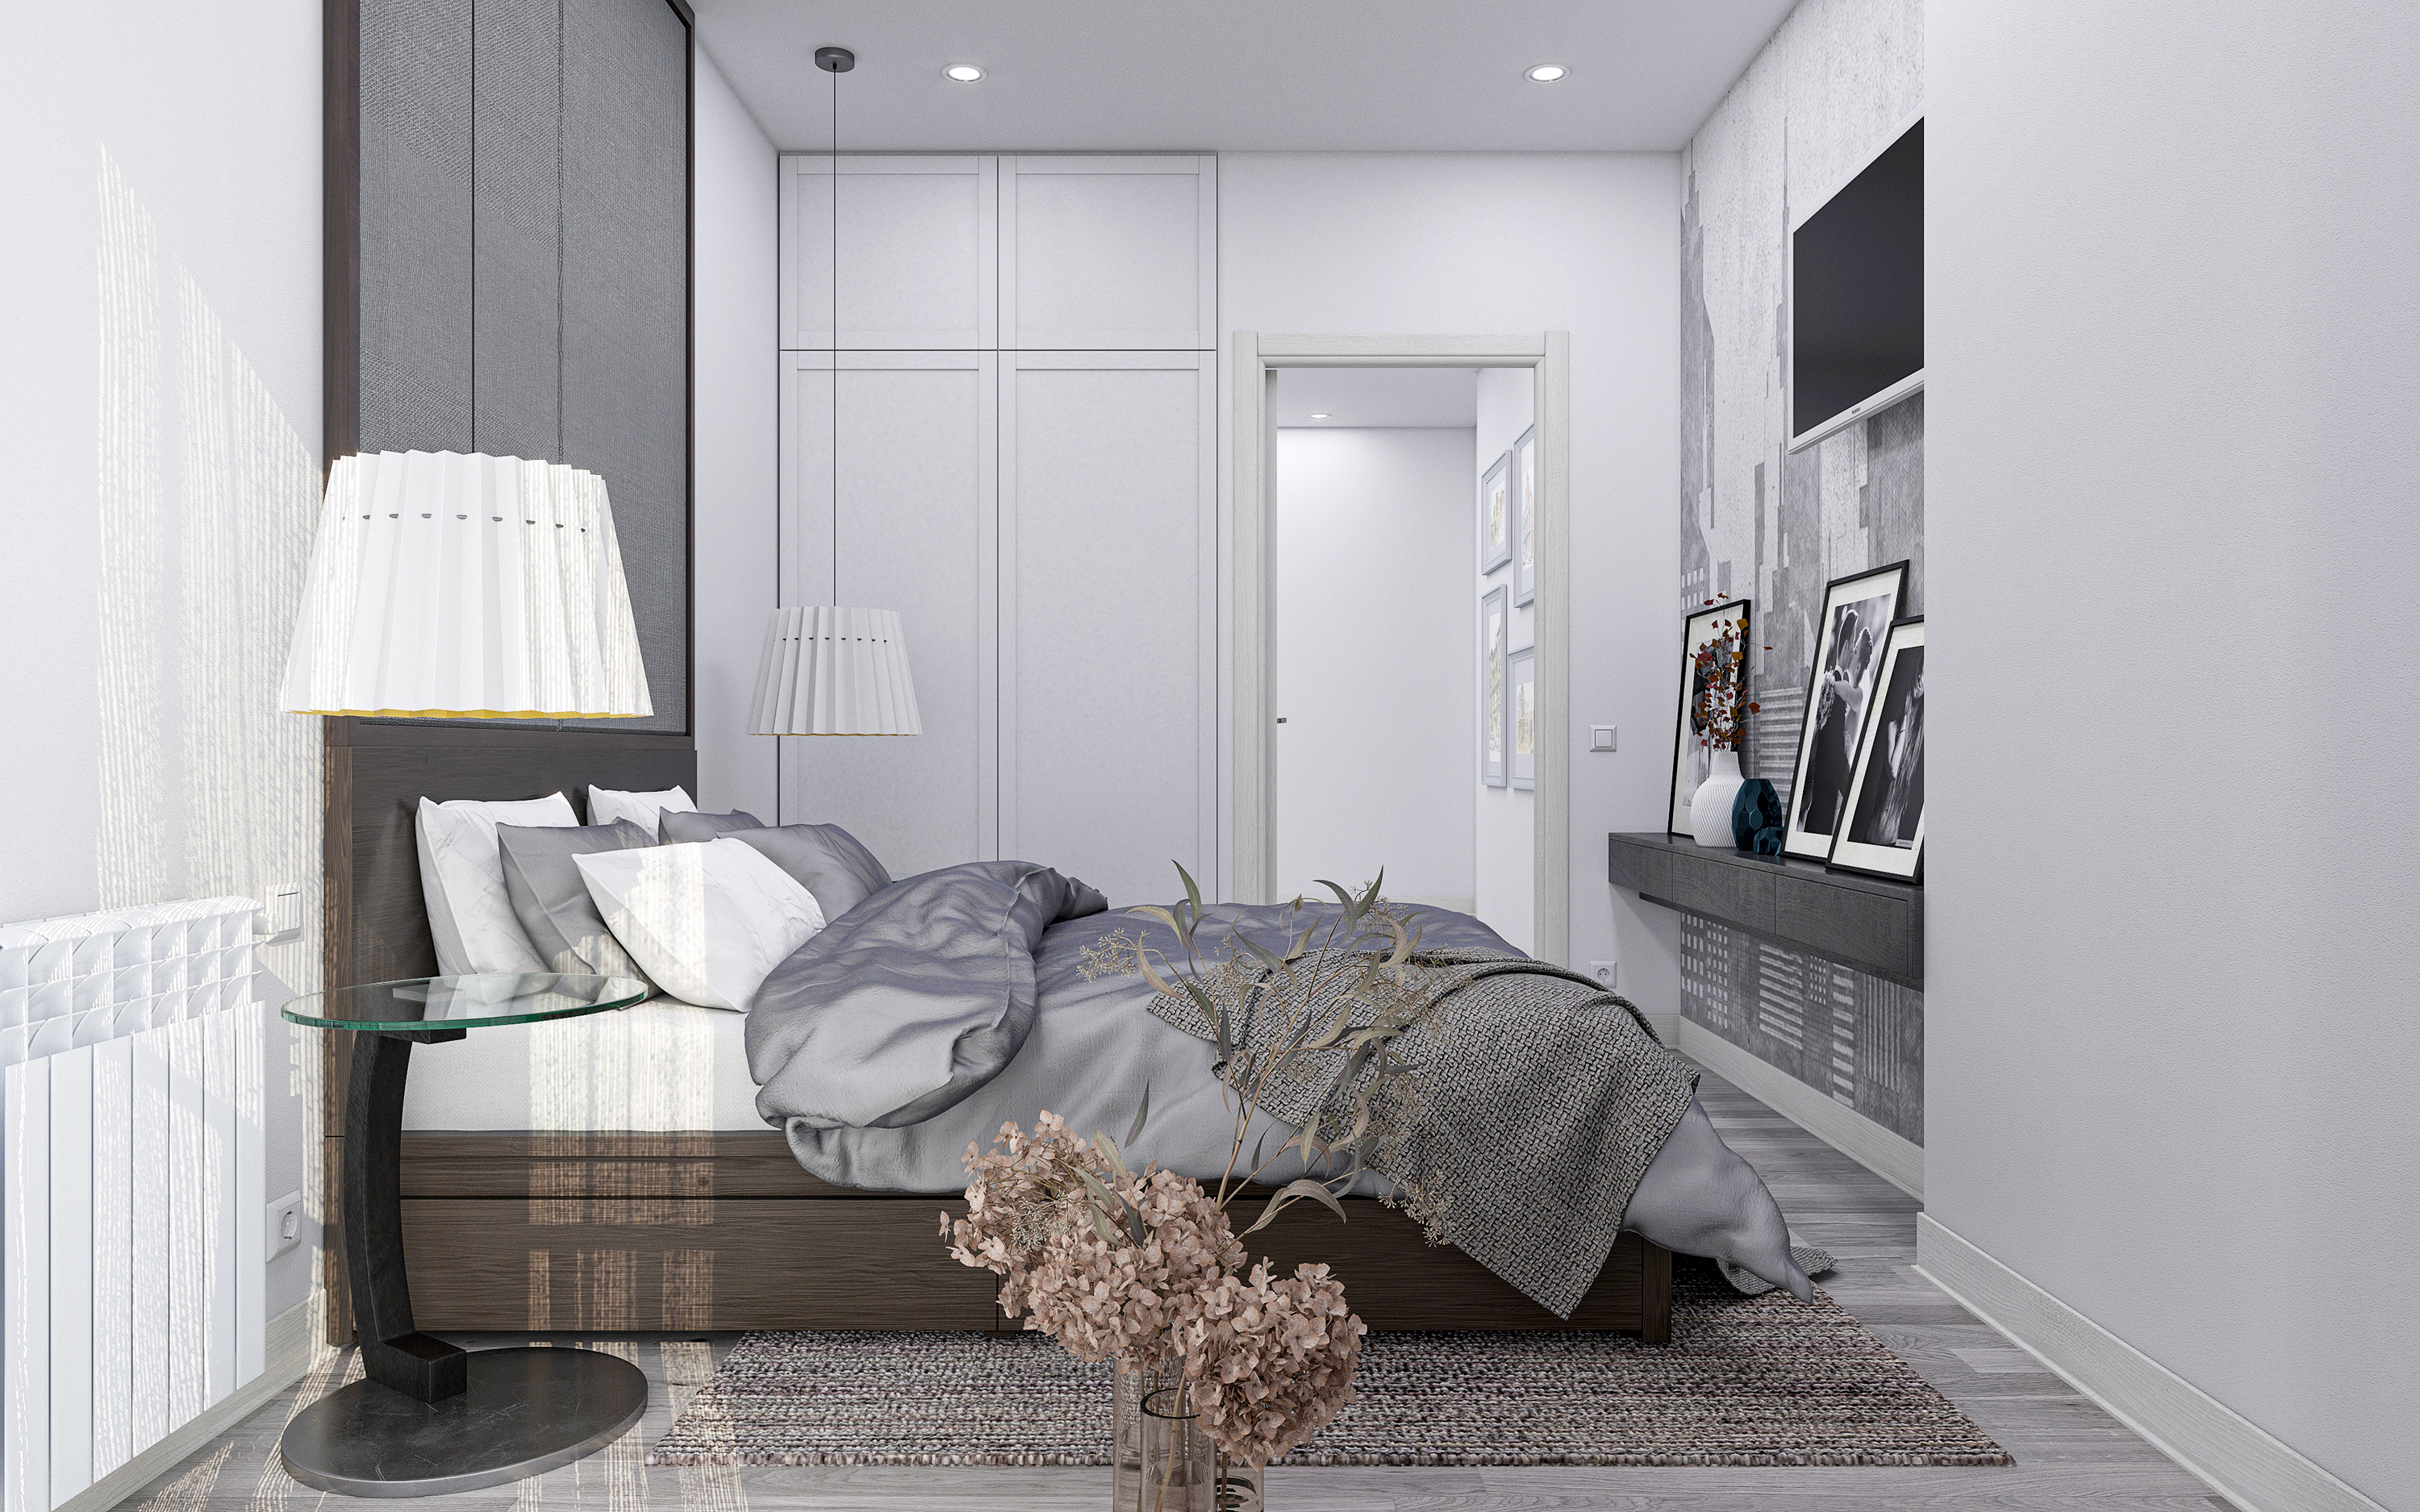 imagen de Apartamento de tres habitaciones S73 en 3d max corona render